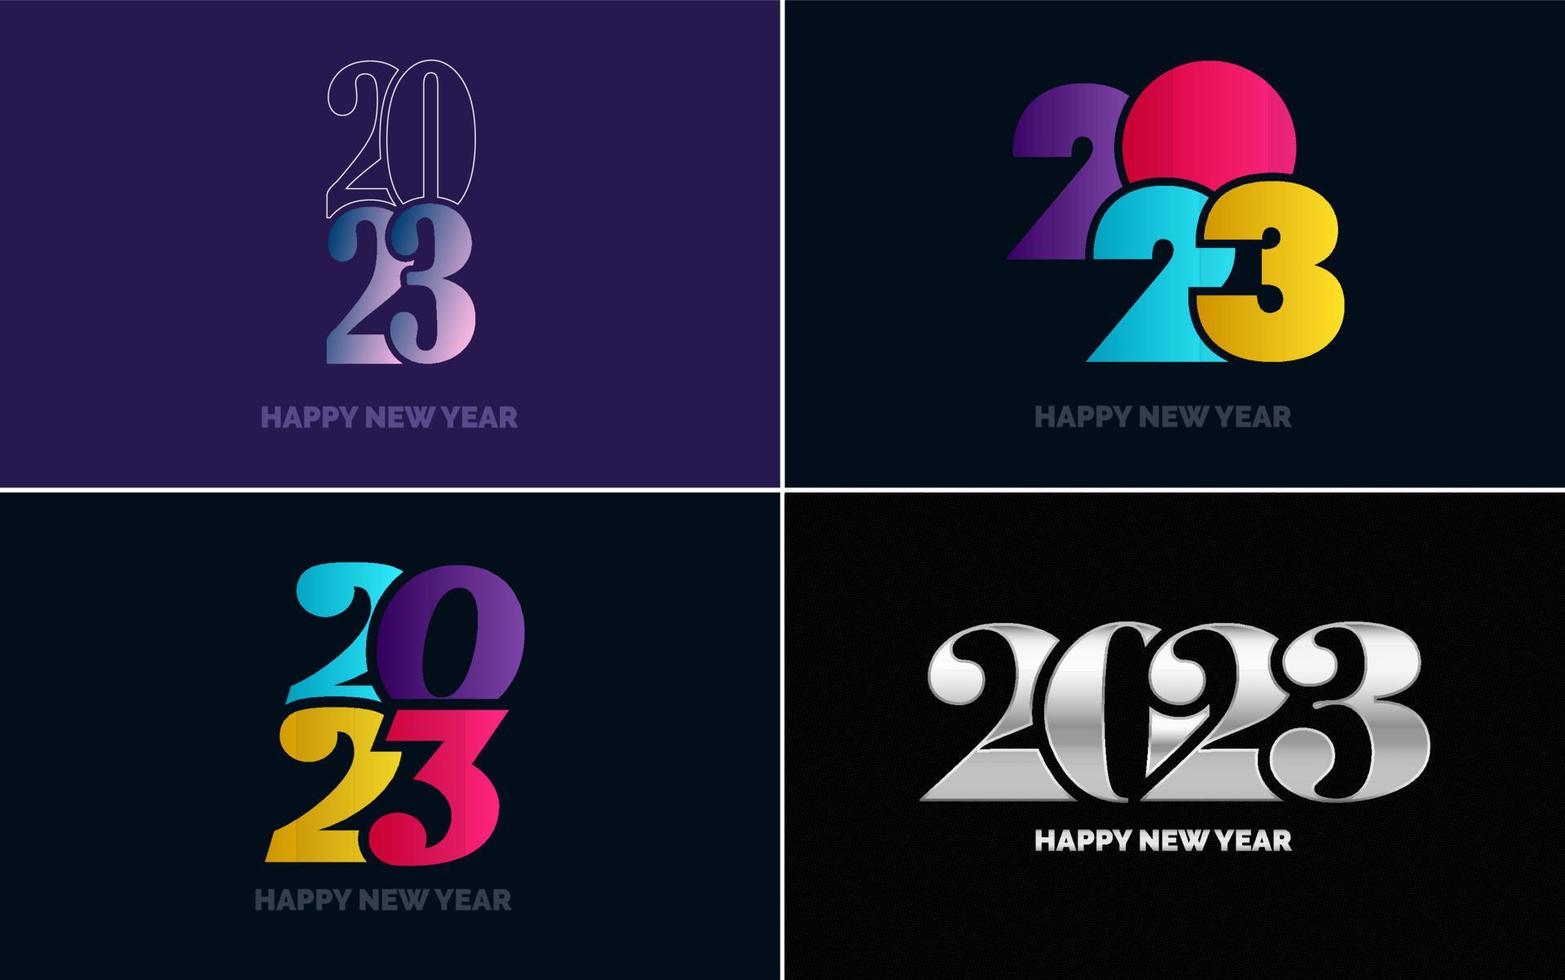 groot reeks 2023 gelukkig nieuw jaar zwart logo tekst ontwerp. 20 23 aantal ontwerp sjabloon. verzameling van symbolen van 2023 gelukkig nieuw jaar vector